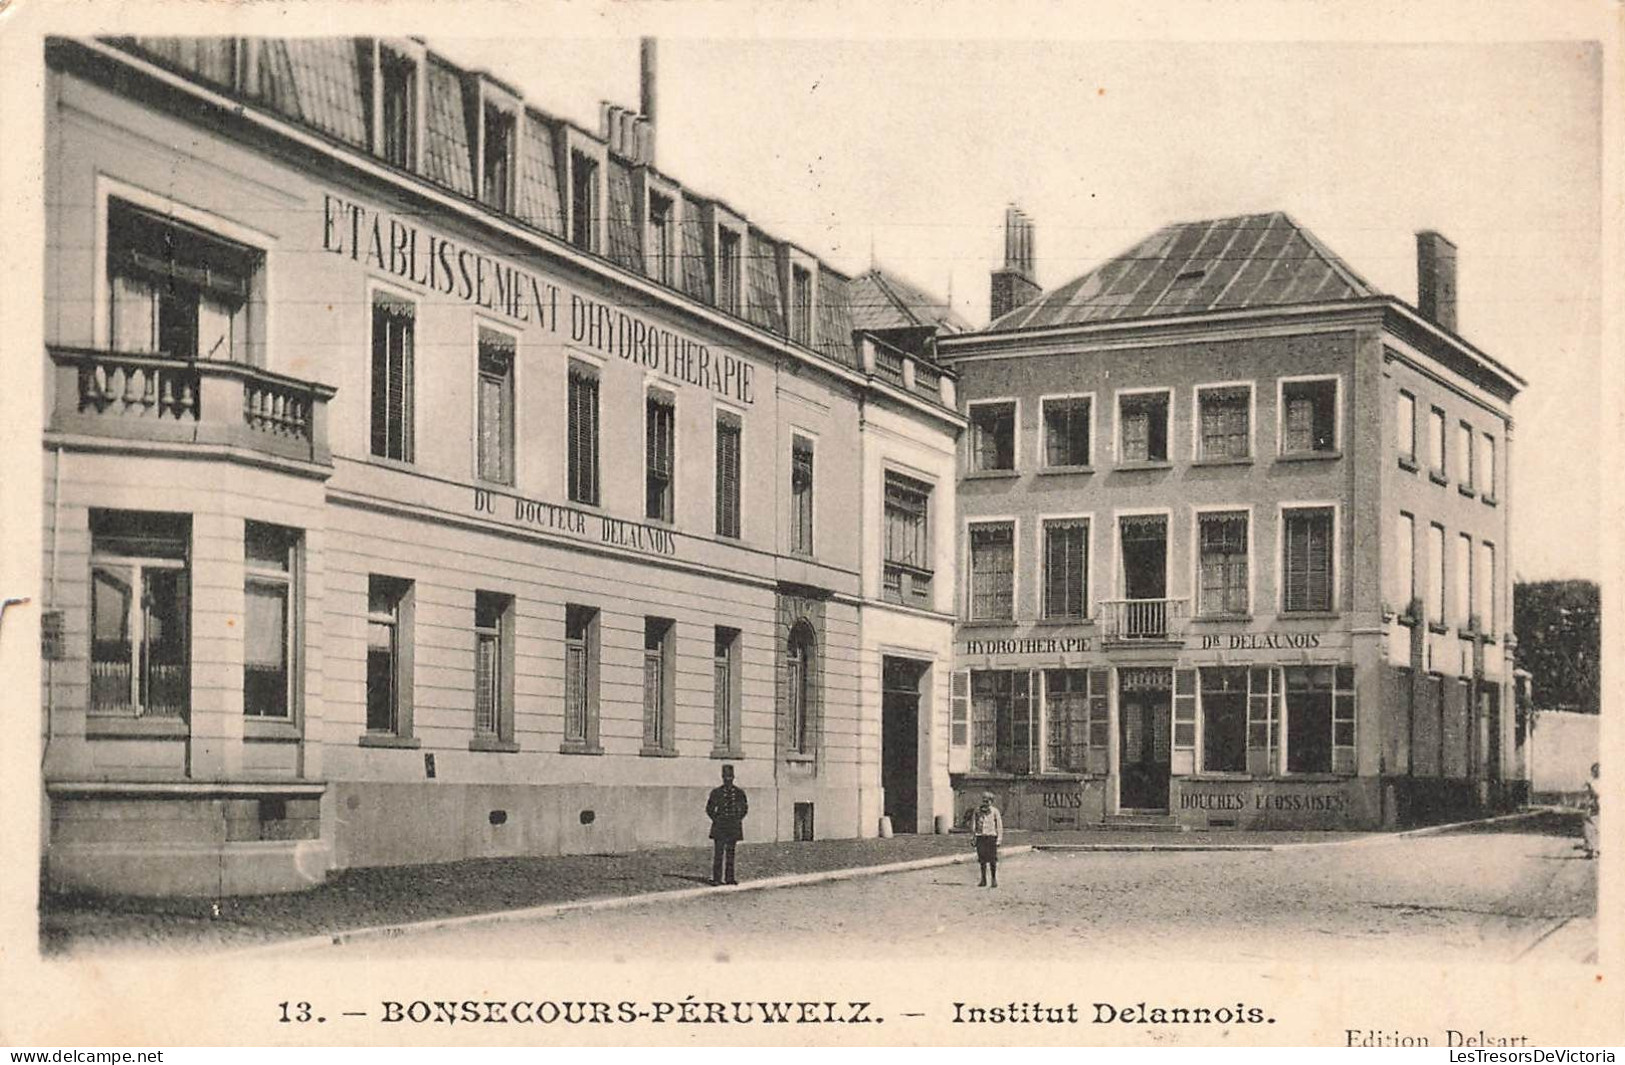 BELGIQUE - Bonsecours Péruwelz - Institut Delannois - Etablissement Dhydrotherapie - Carte Postale Ancienne - Peruwelz